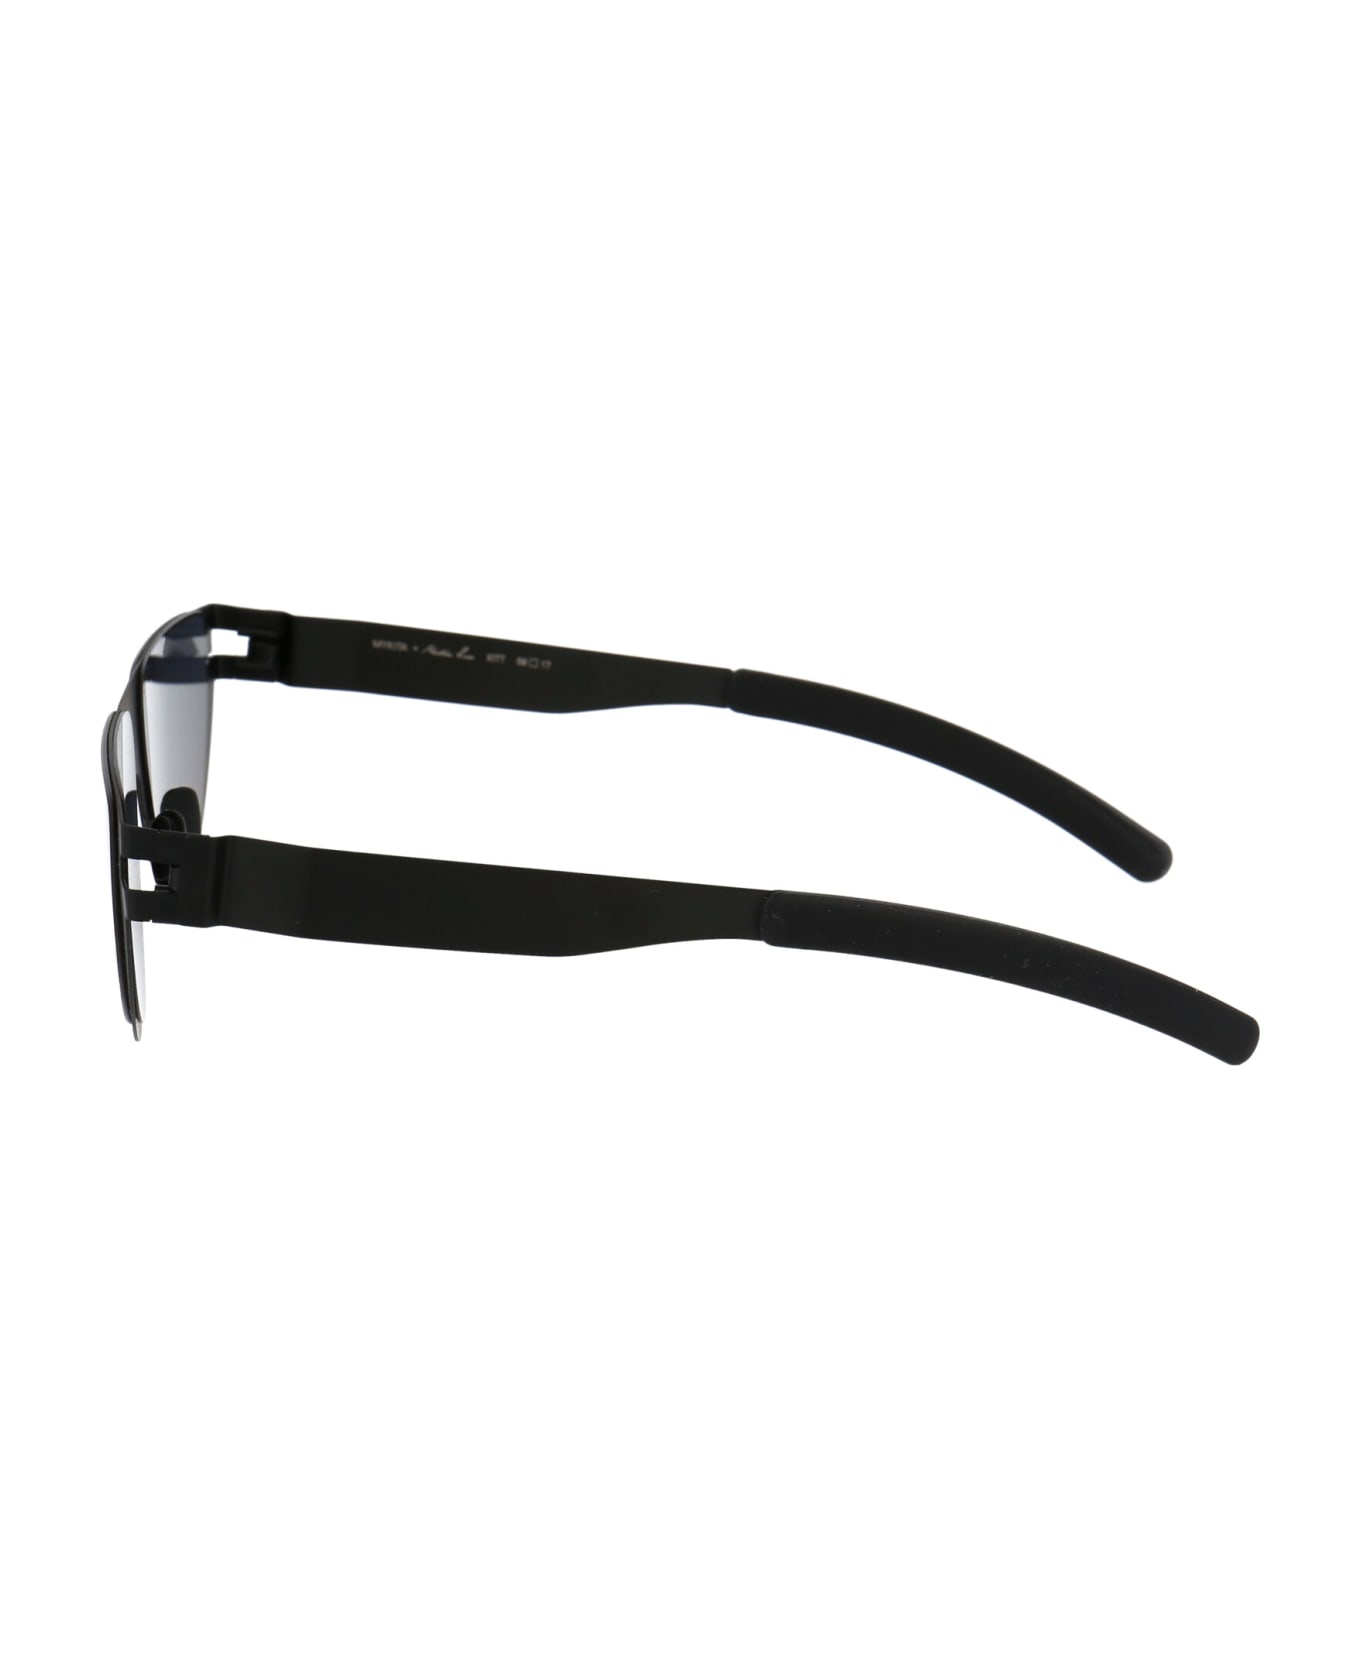 Mykita Kitt Sunglasses - 002 BLACK DARKGREY SOLID サングラス